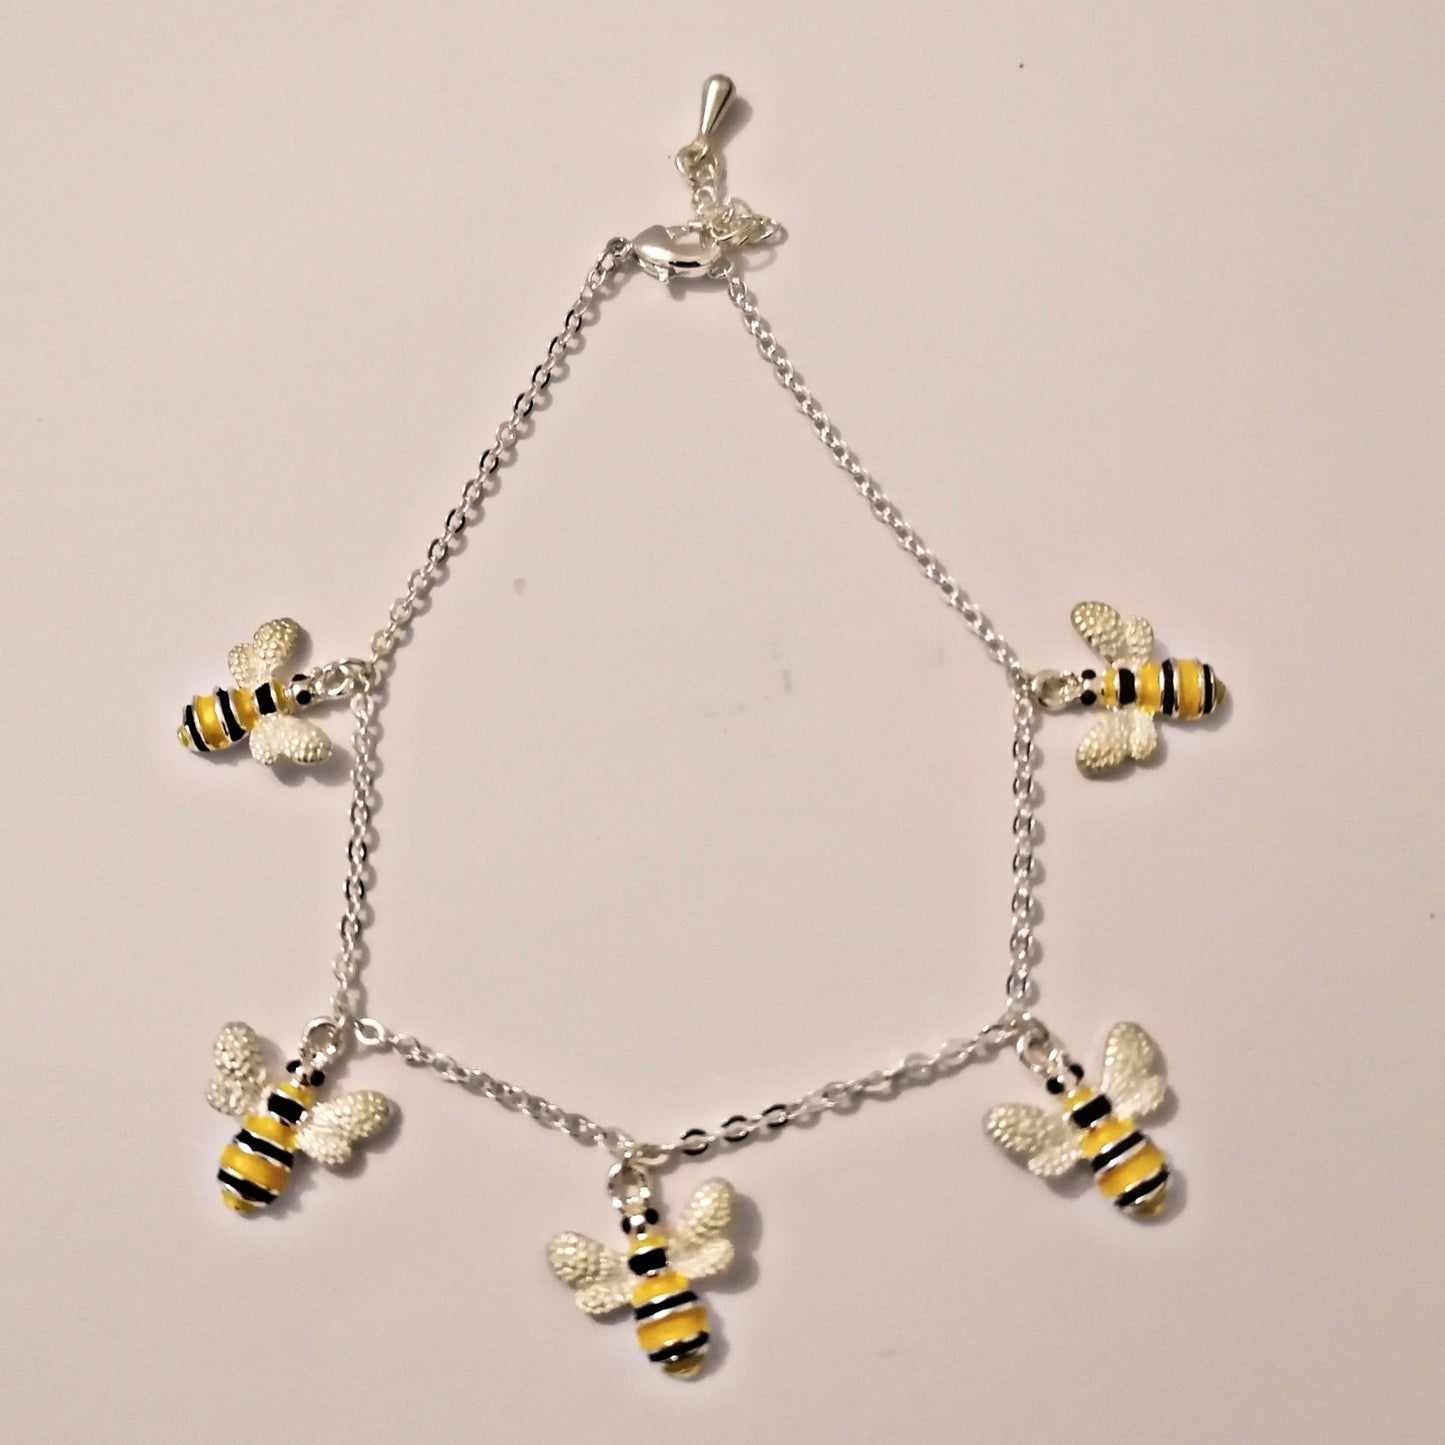 Bumble Bee Chain Charm Bracelet Silver Colour